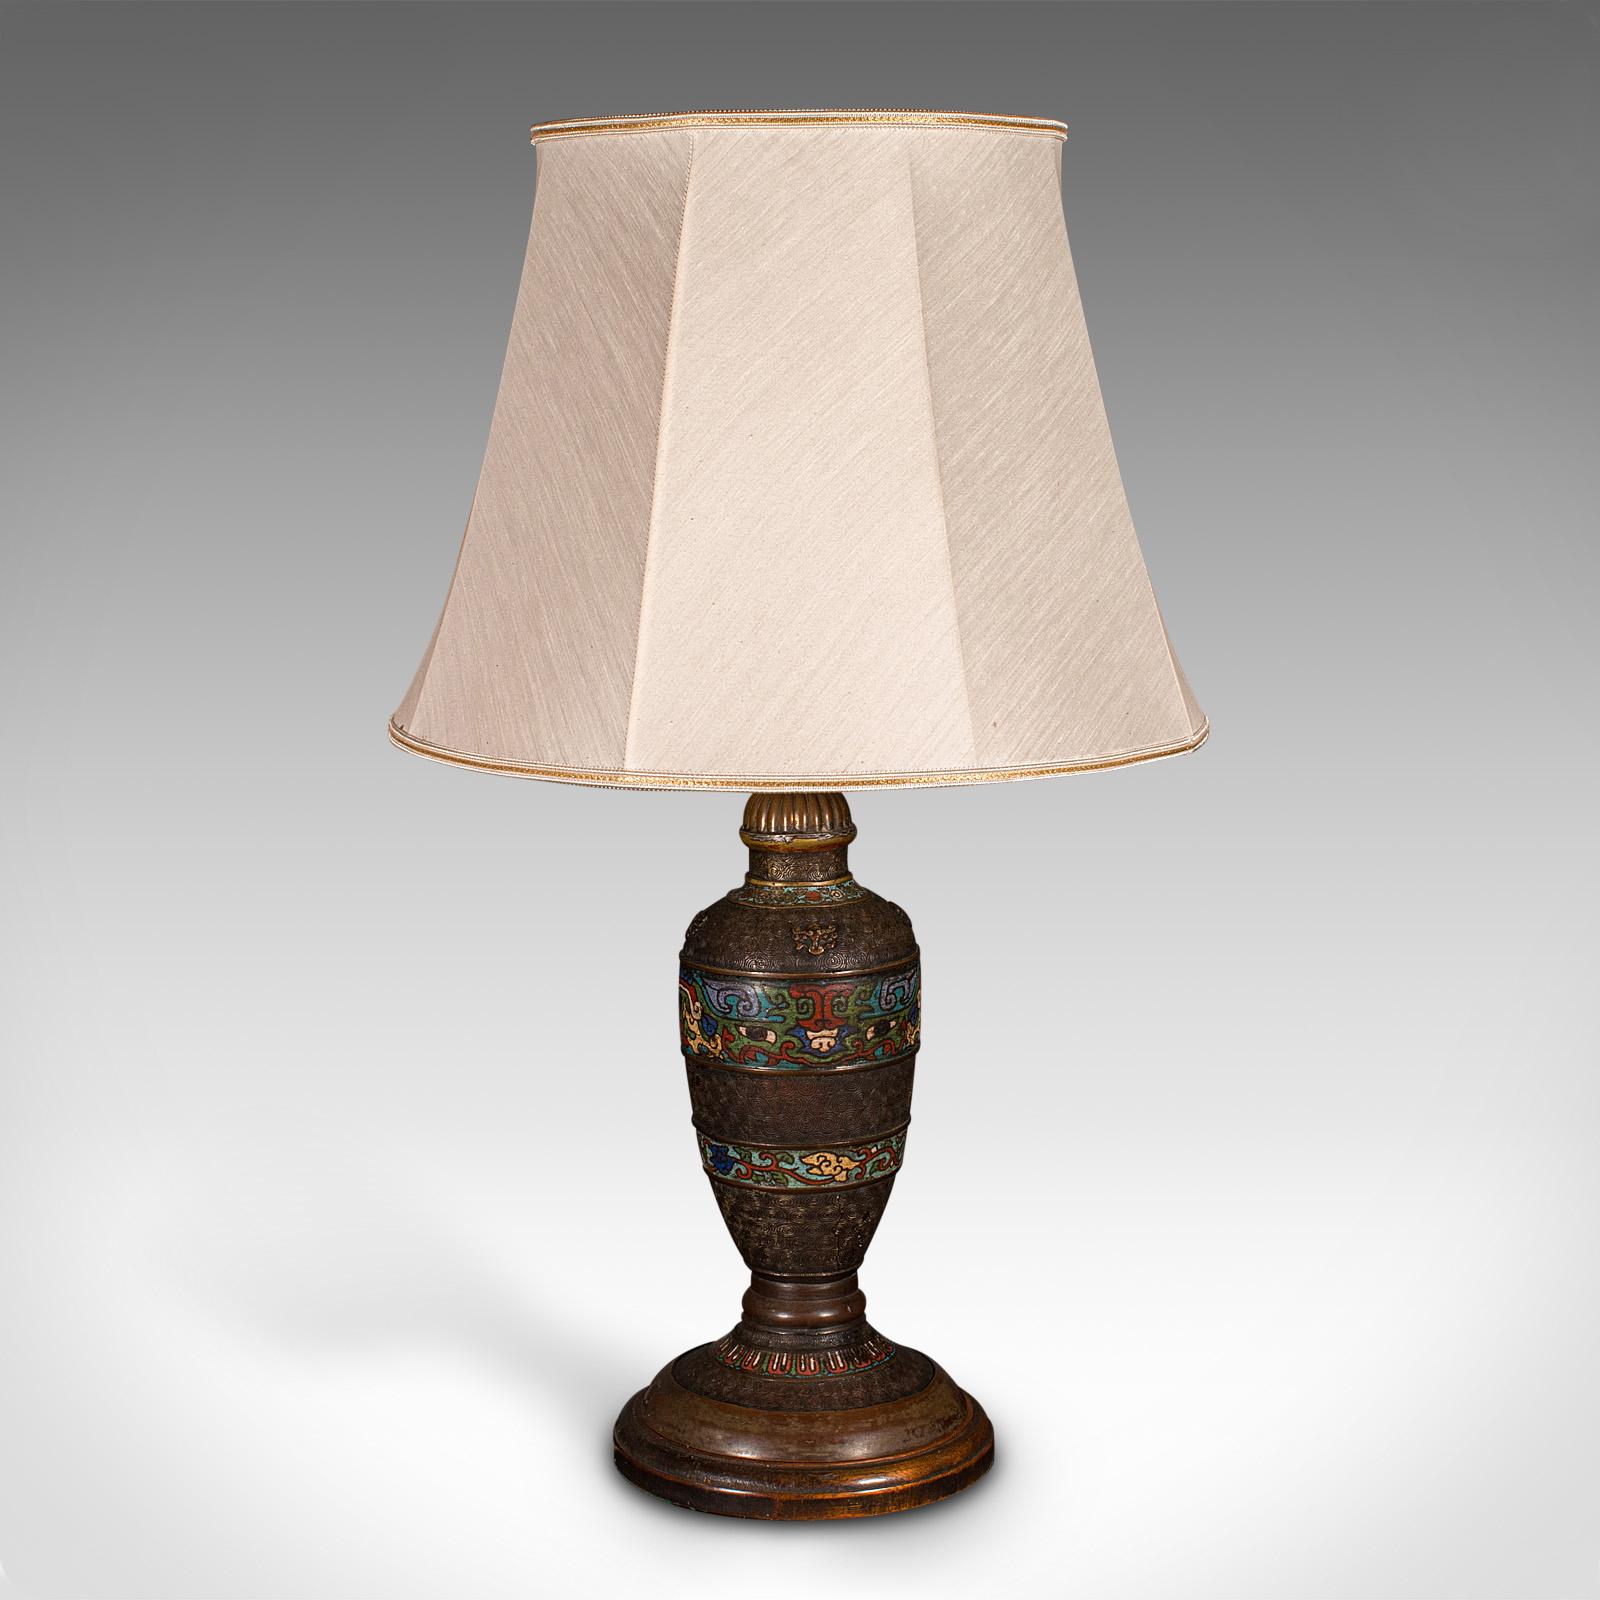 19th Century Antique Cloisonne Lamp, Japanese, Bronze, Table Light, Victorian, Meiji, C.1850 For Sale